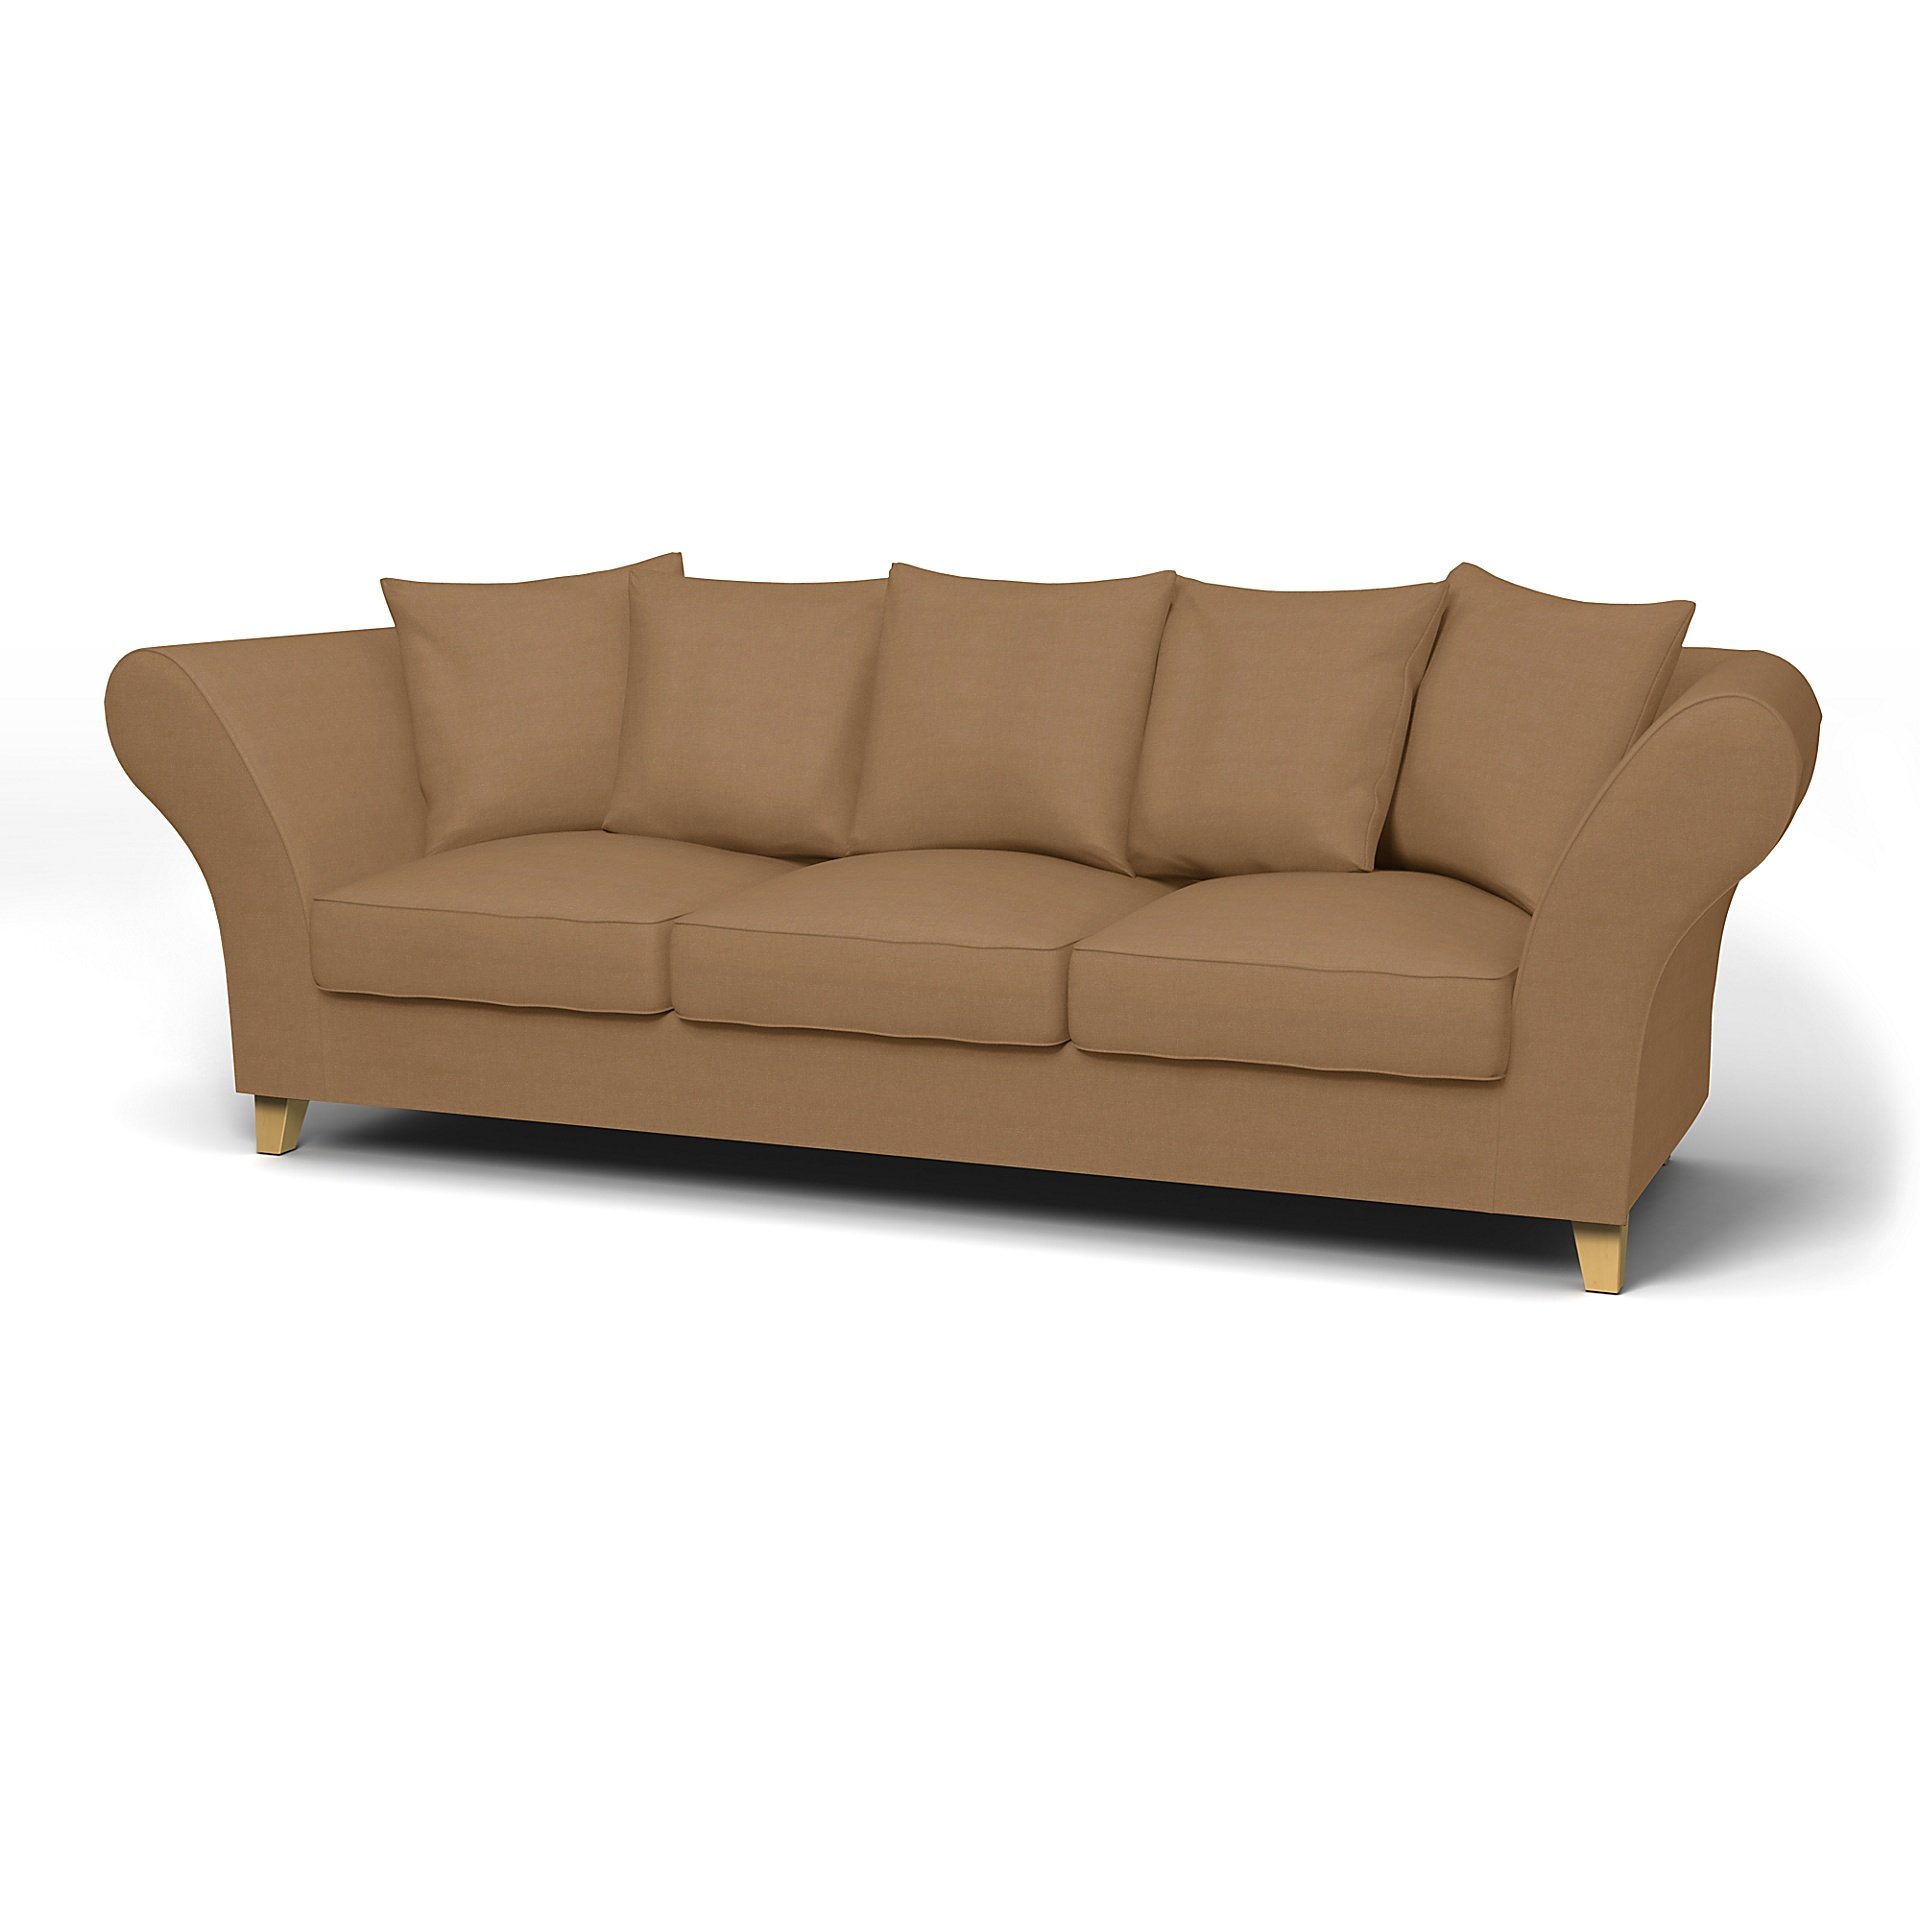 IKEA - Backa 3.5 Seater Sofa Cover, Nougat, Linen - Bemz